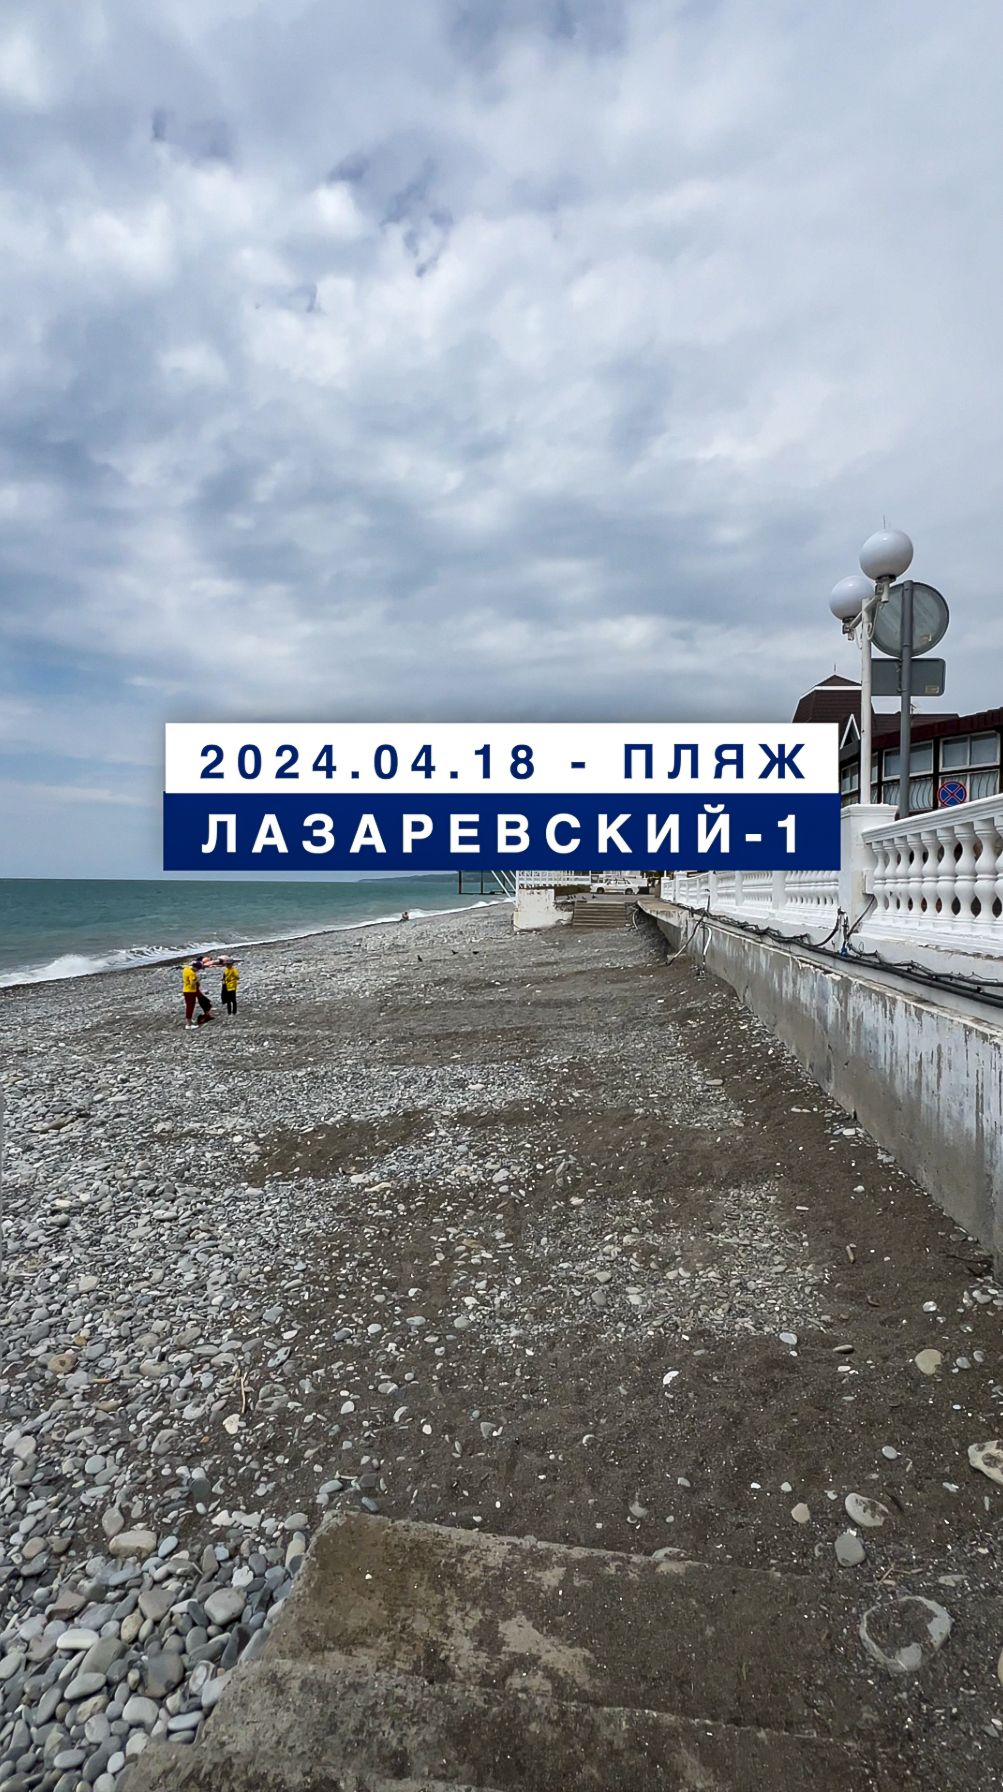 Обстановка на море в Лазаревском 18 апреля 2024, пляж Лазаревский-1.